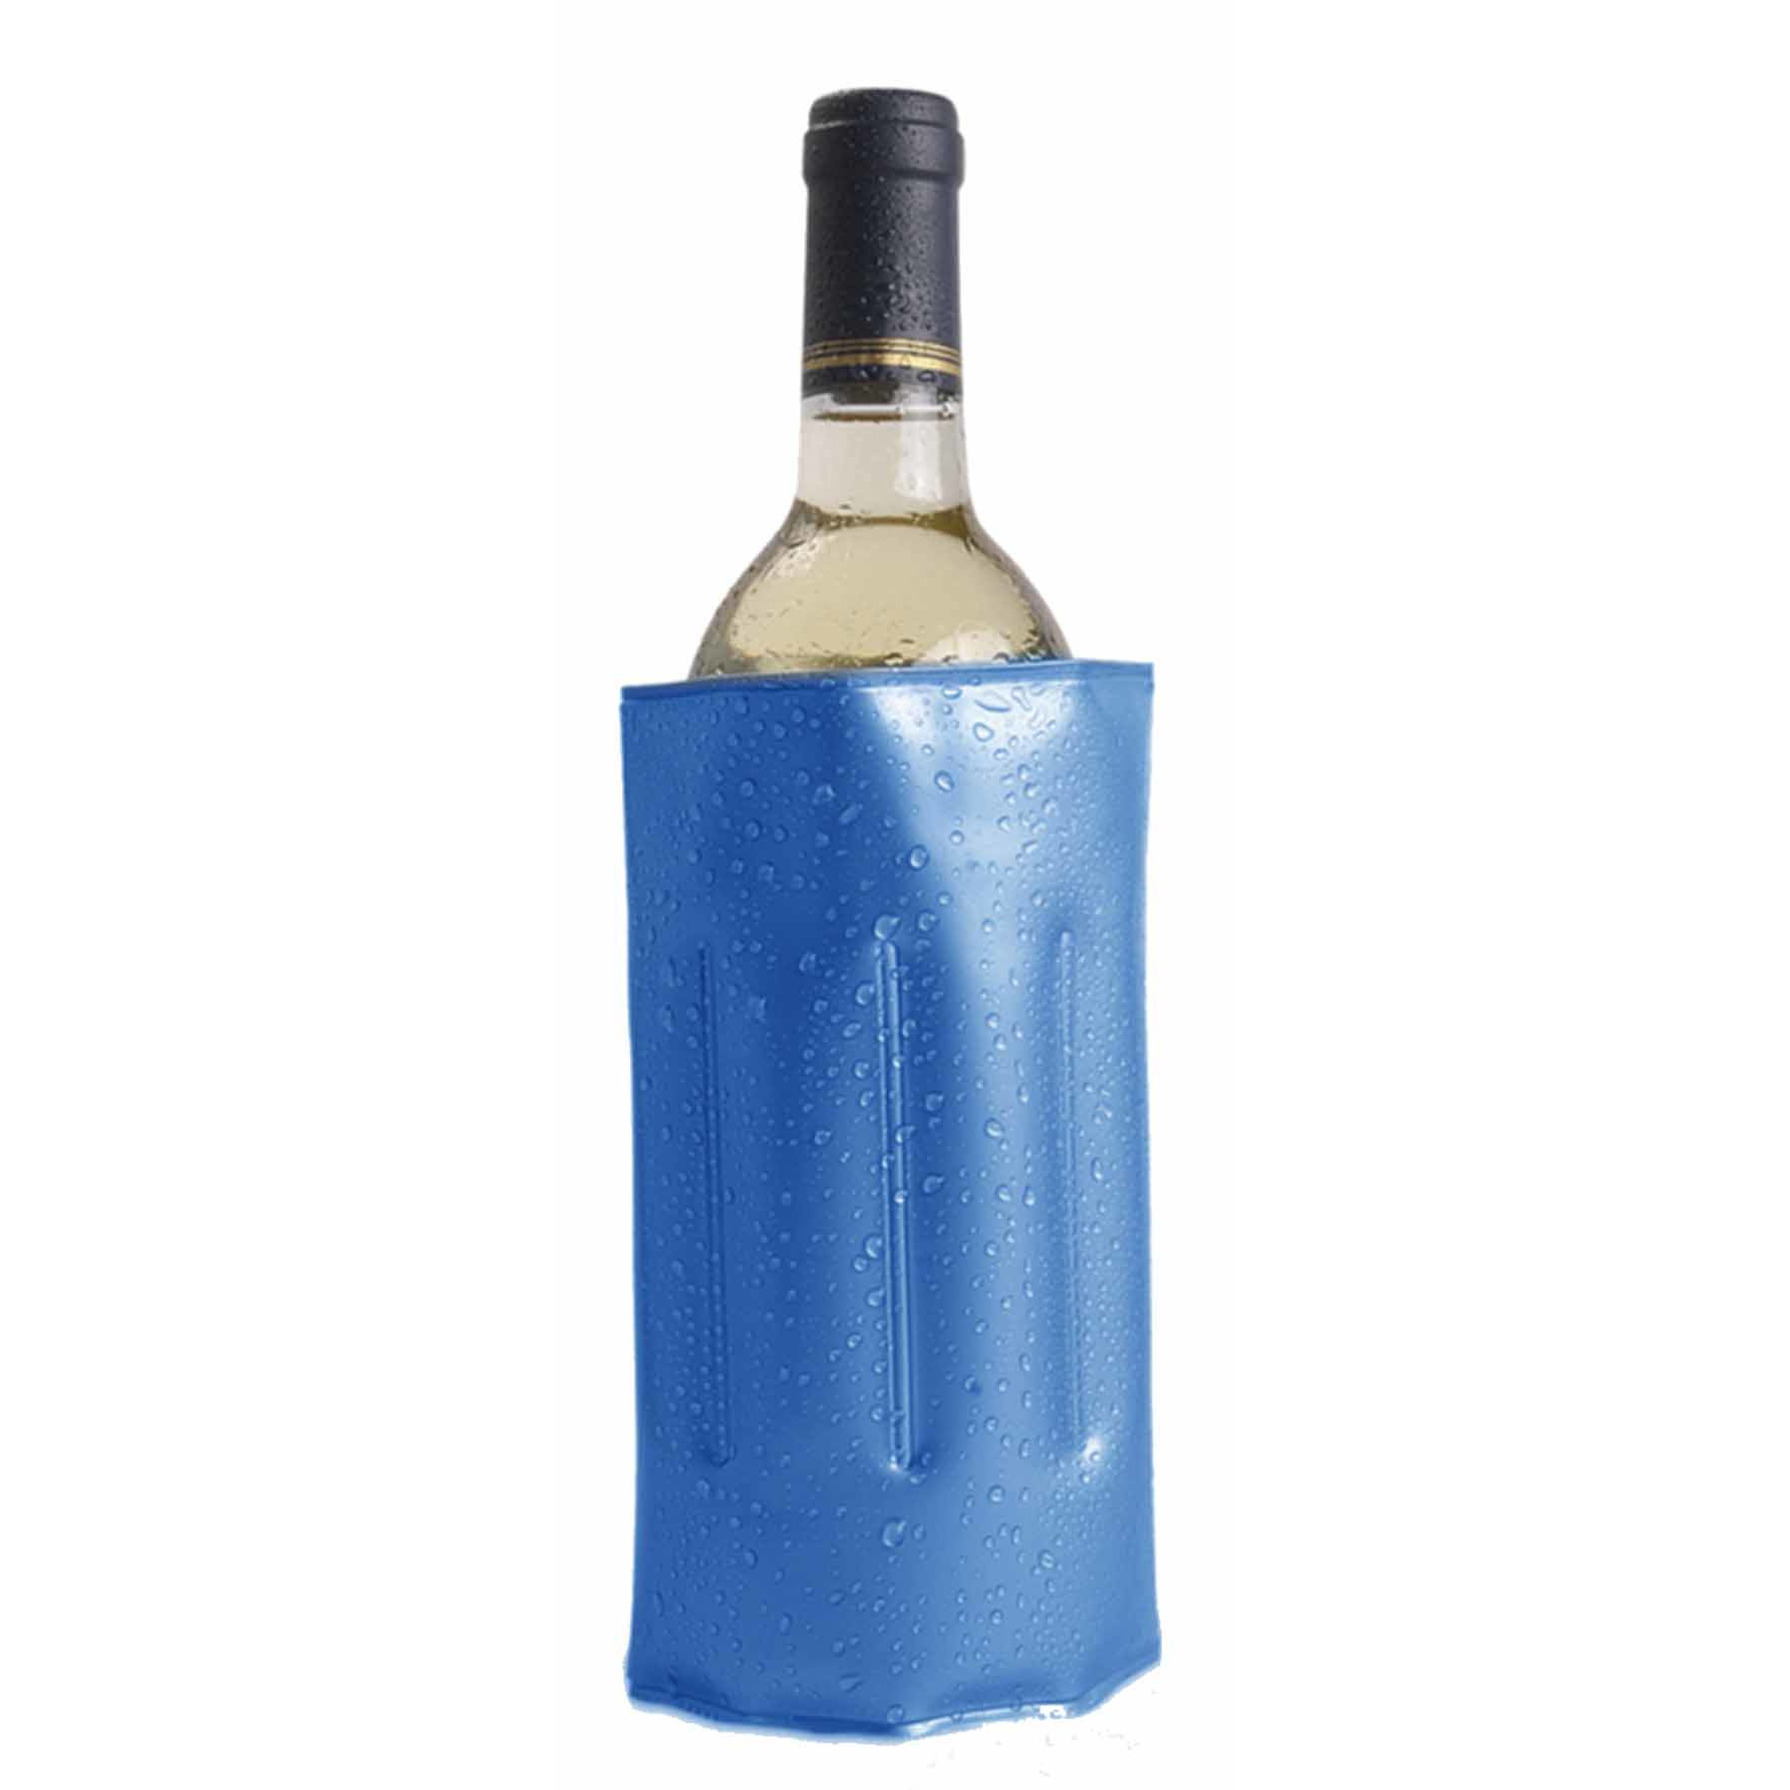 1x Wijnflessen-drankflessen koeler hoes blauw 34 x 18 cm